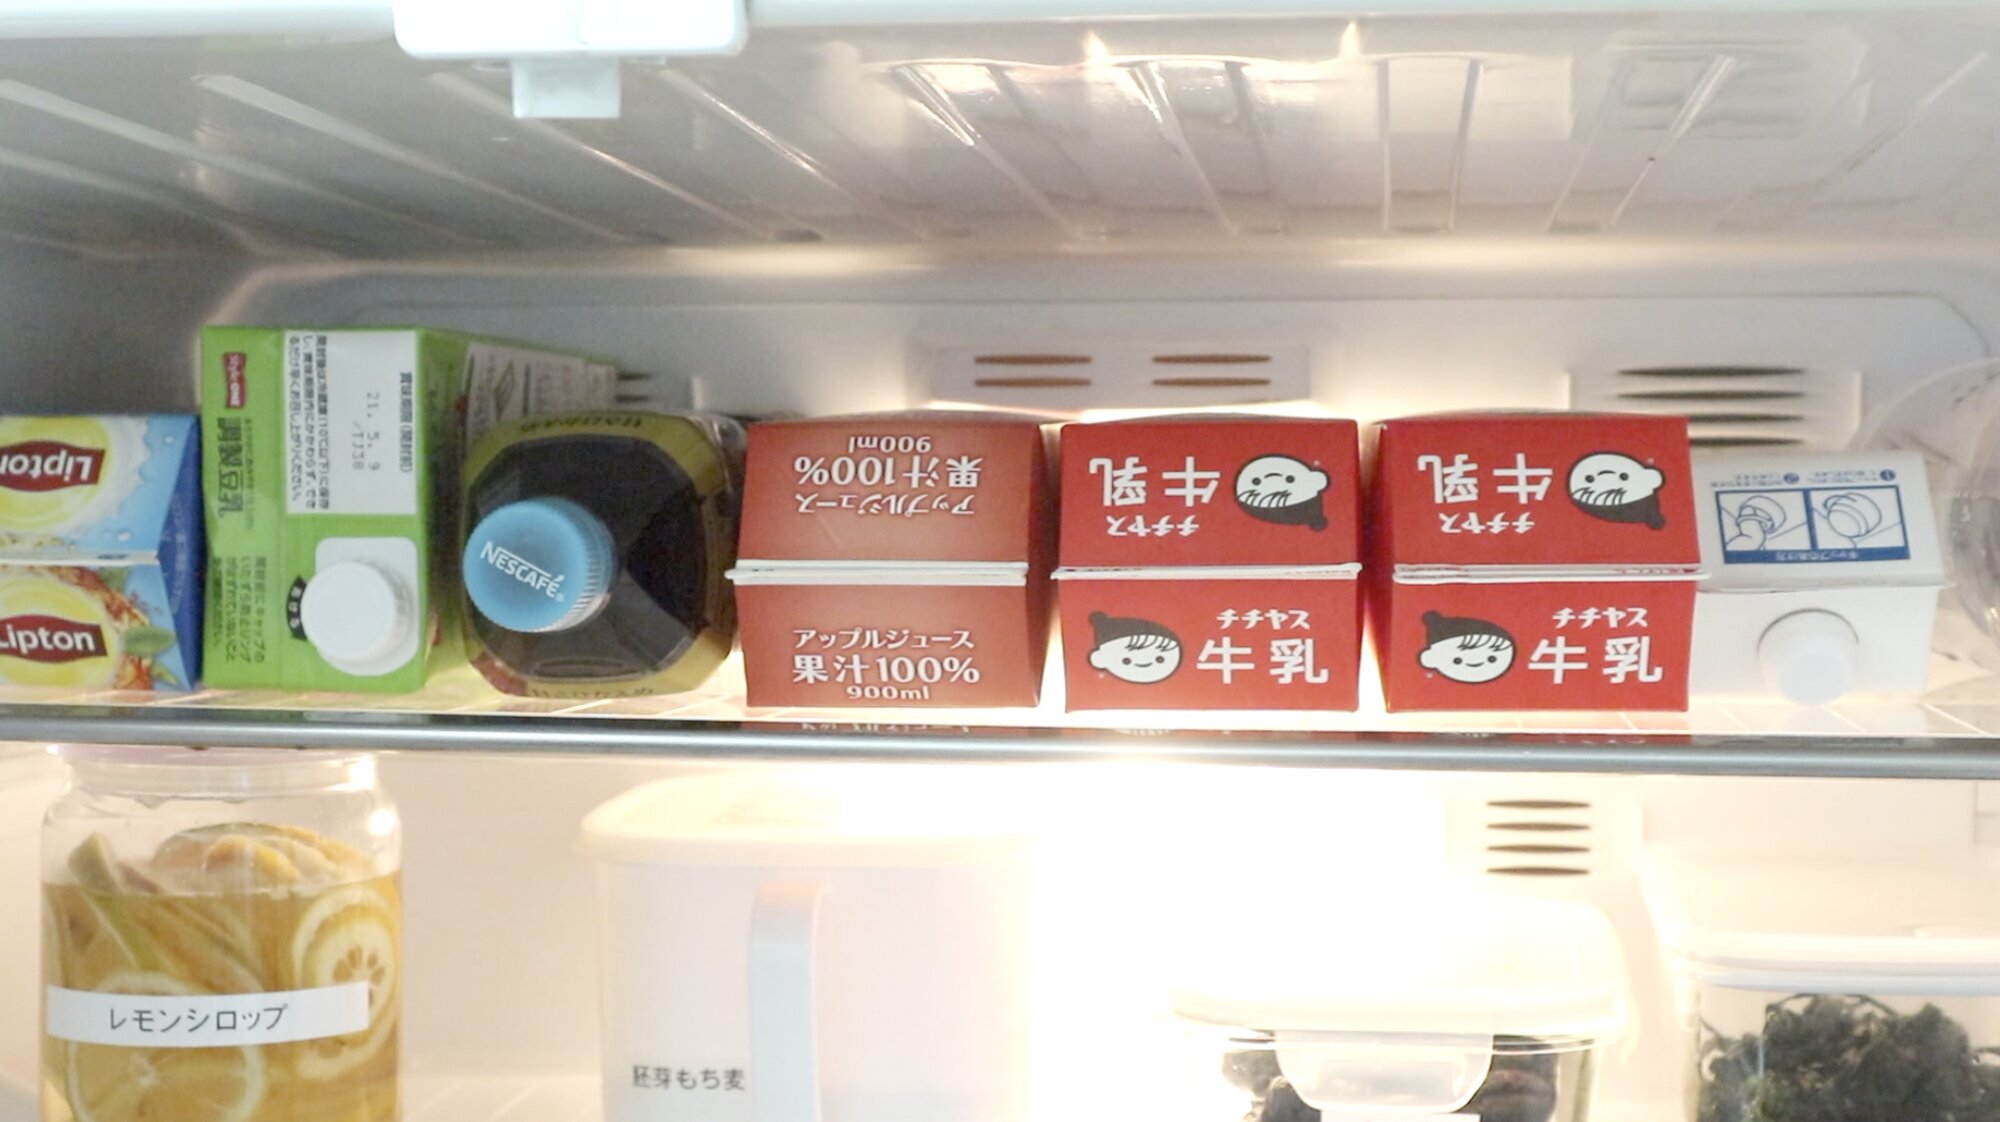 飲み物類のストック置き場にしている冷蔵庫内の棚。